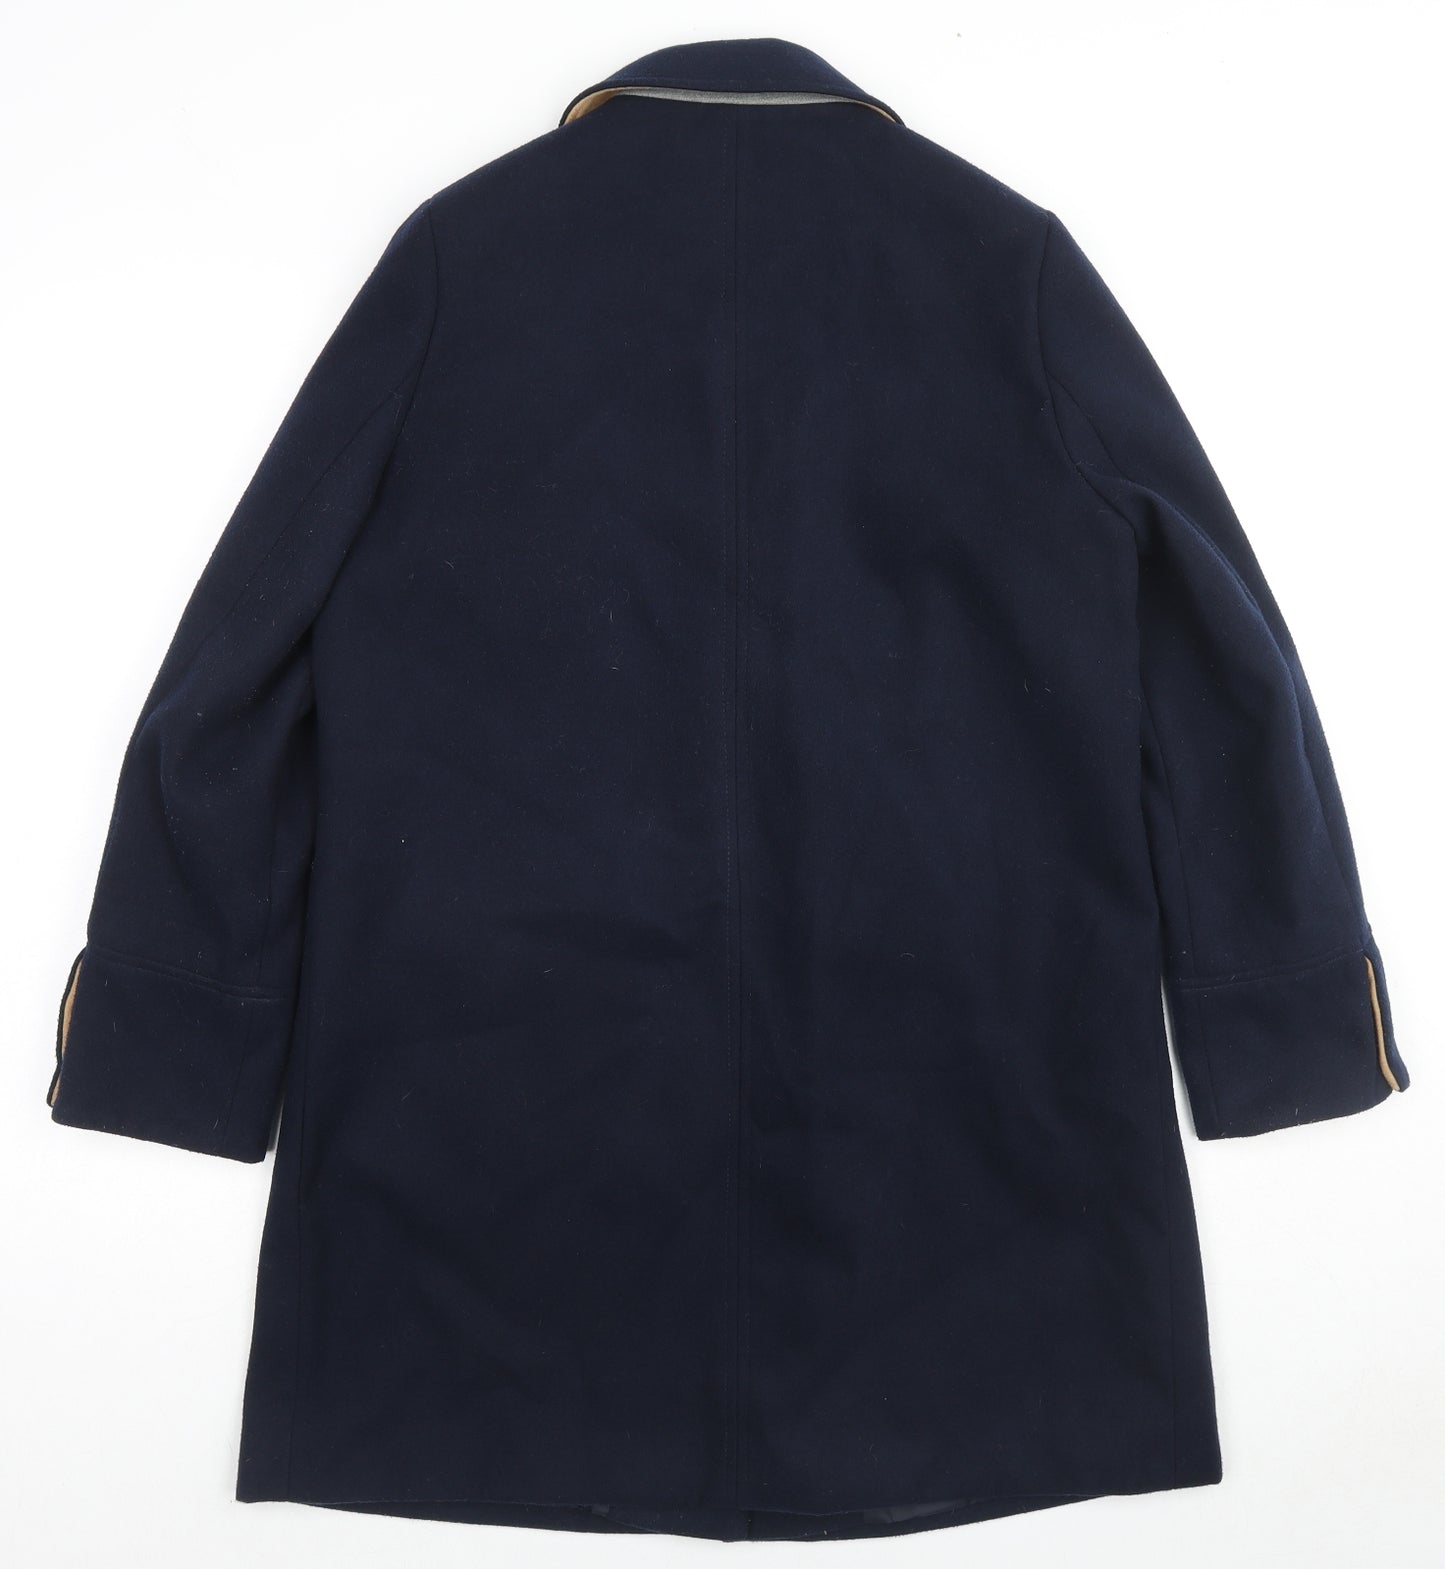 Topshop Womens Blue Overcoat Coat Size 12 Zip